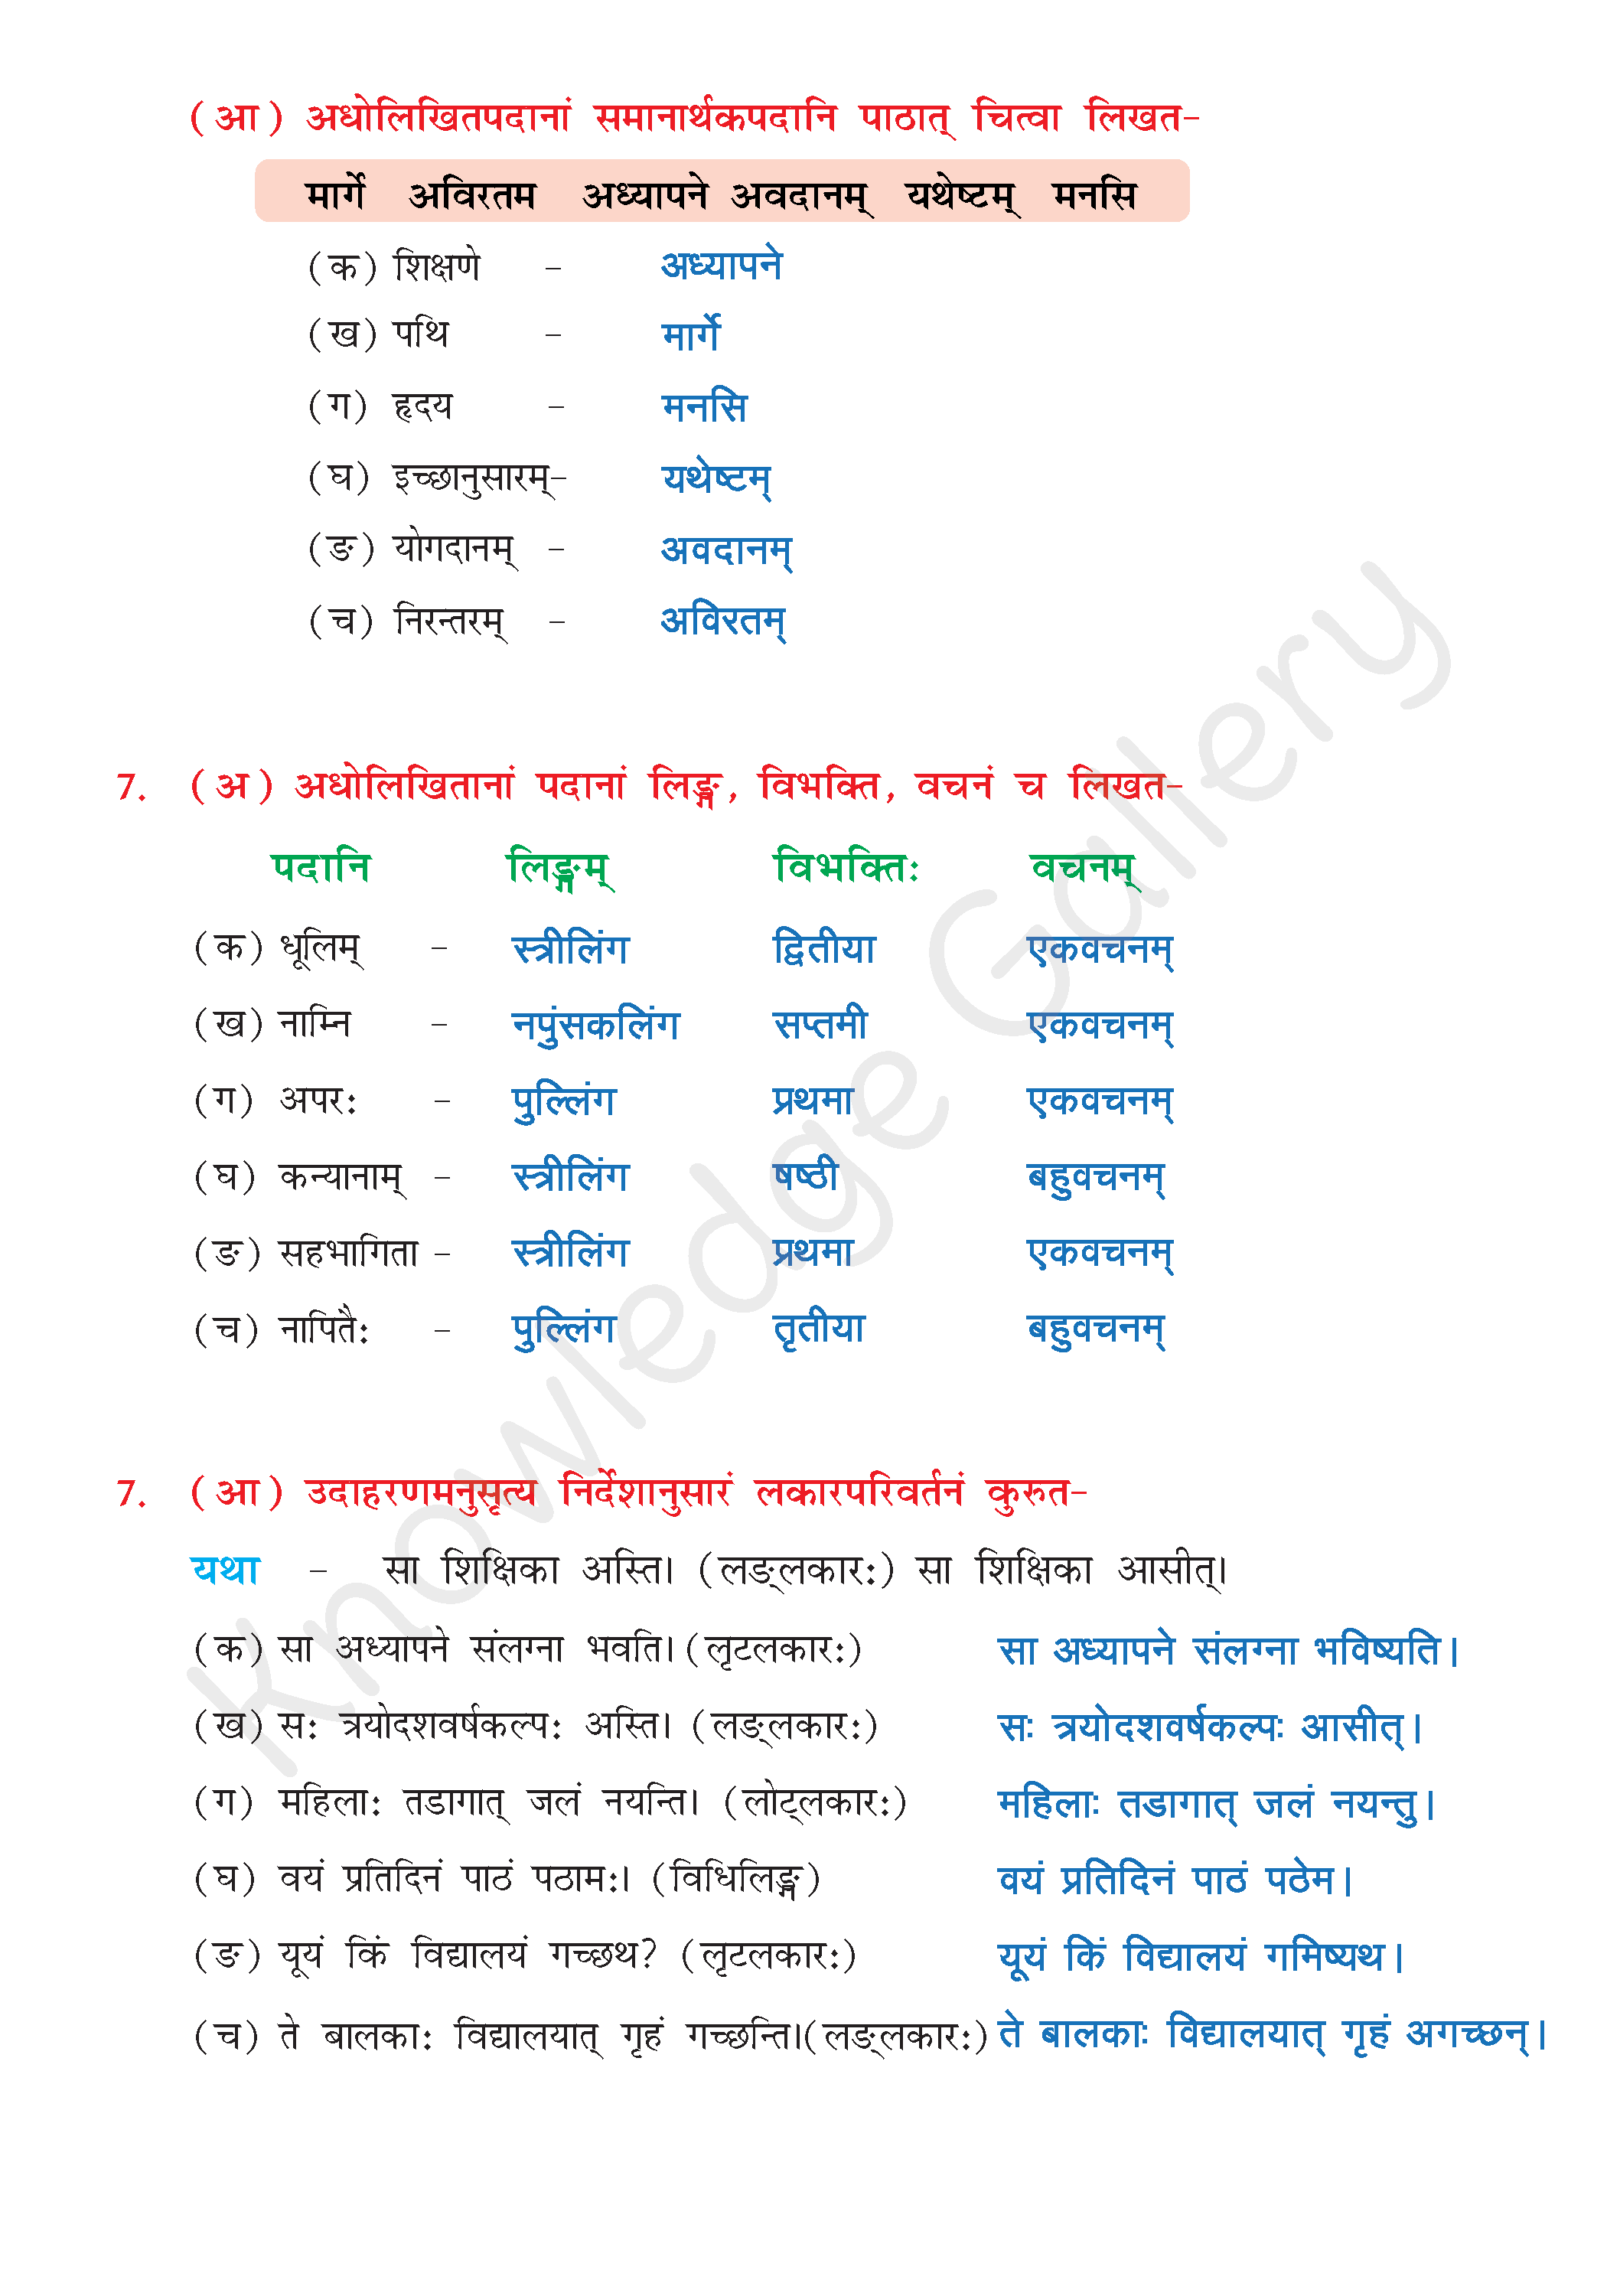 NCERT Solution For Class 8 Sanskrit Chapter 11 part 7